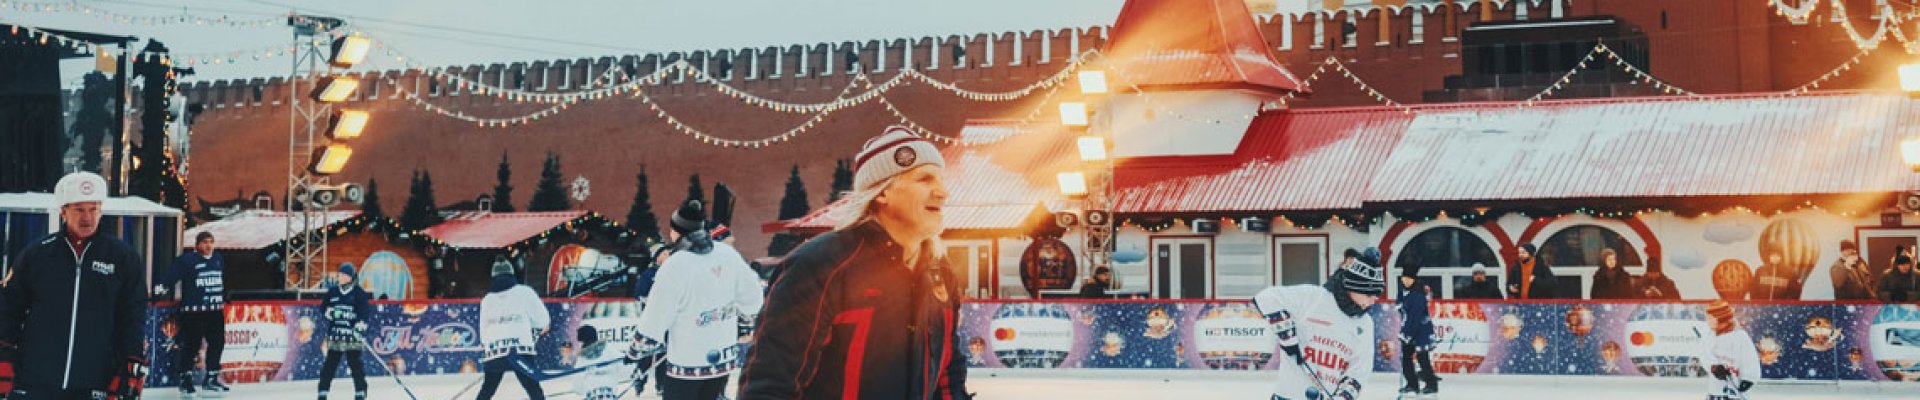 Weihnachtsmarkt mit Schlittschuhbahn am Moskauer Kreml